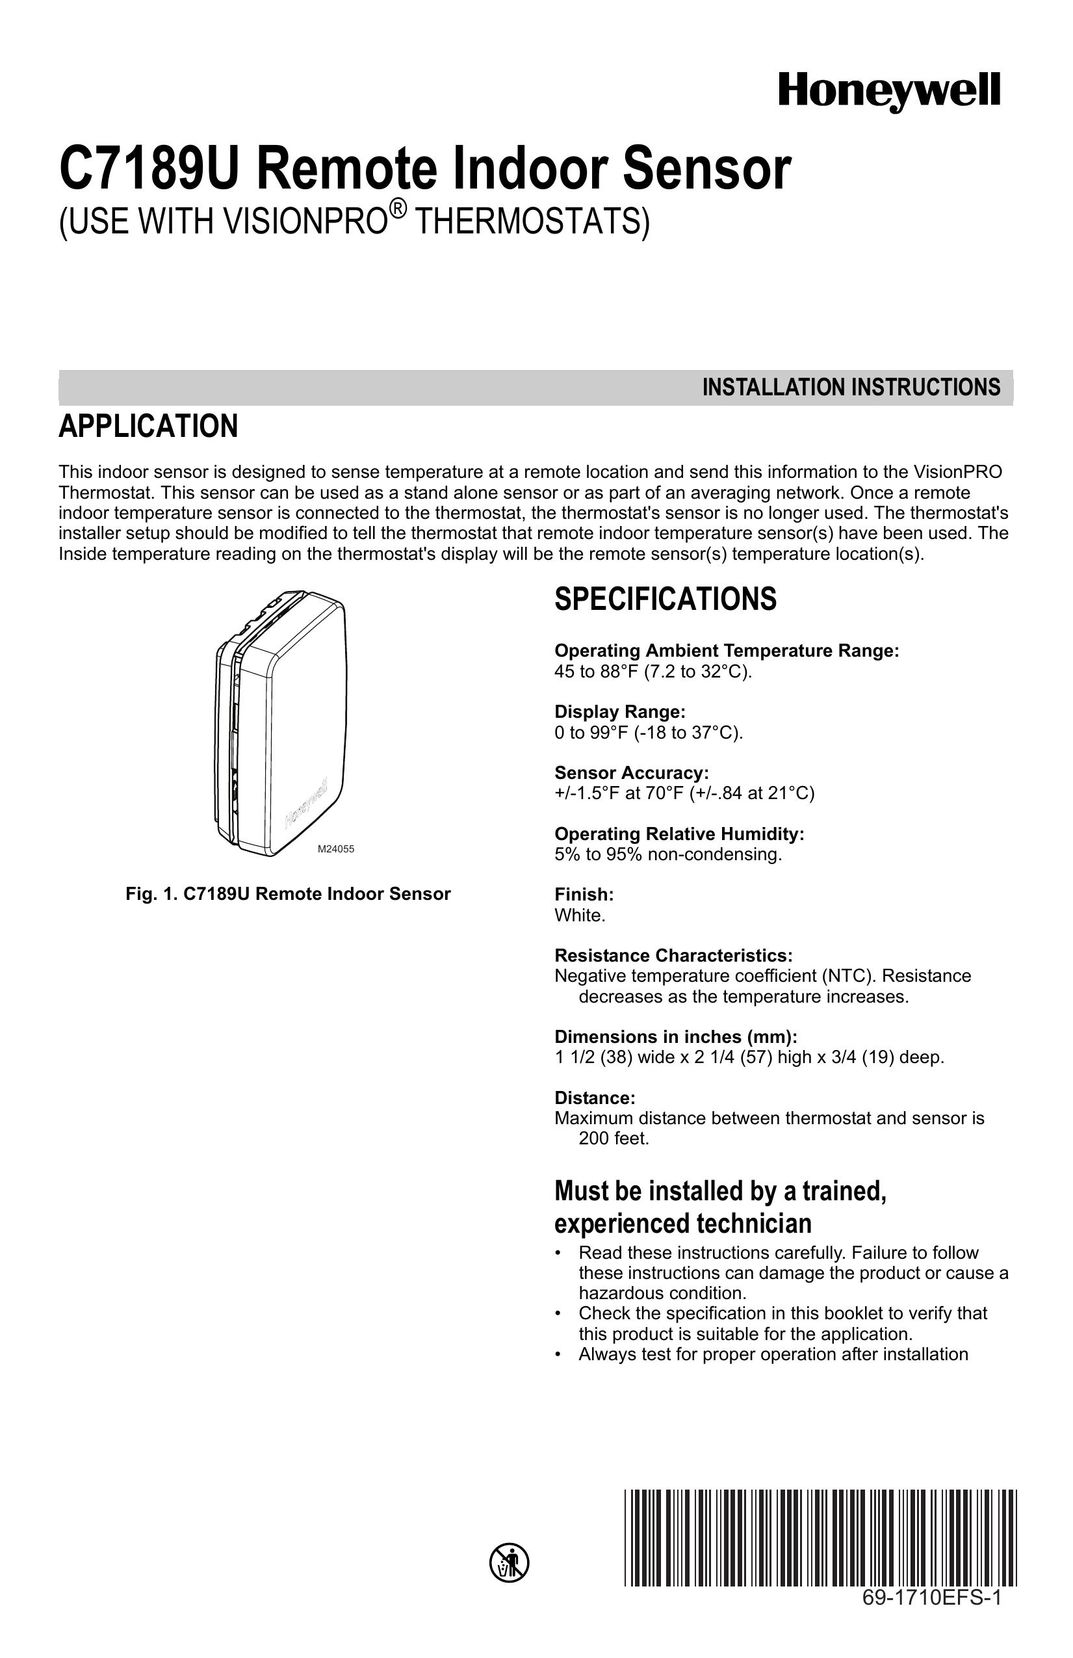 Honeywell C7189U Stud Sensor User Manual